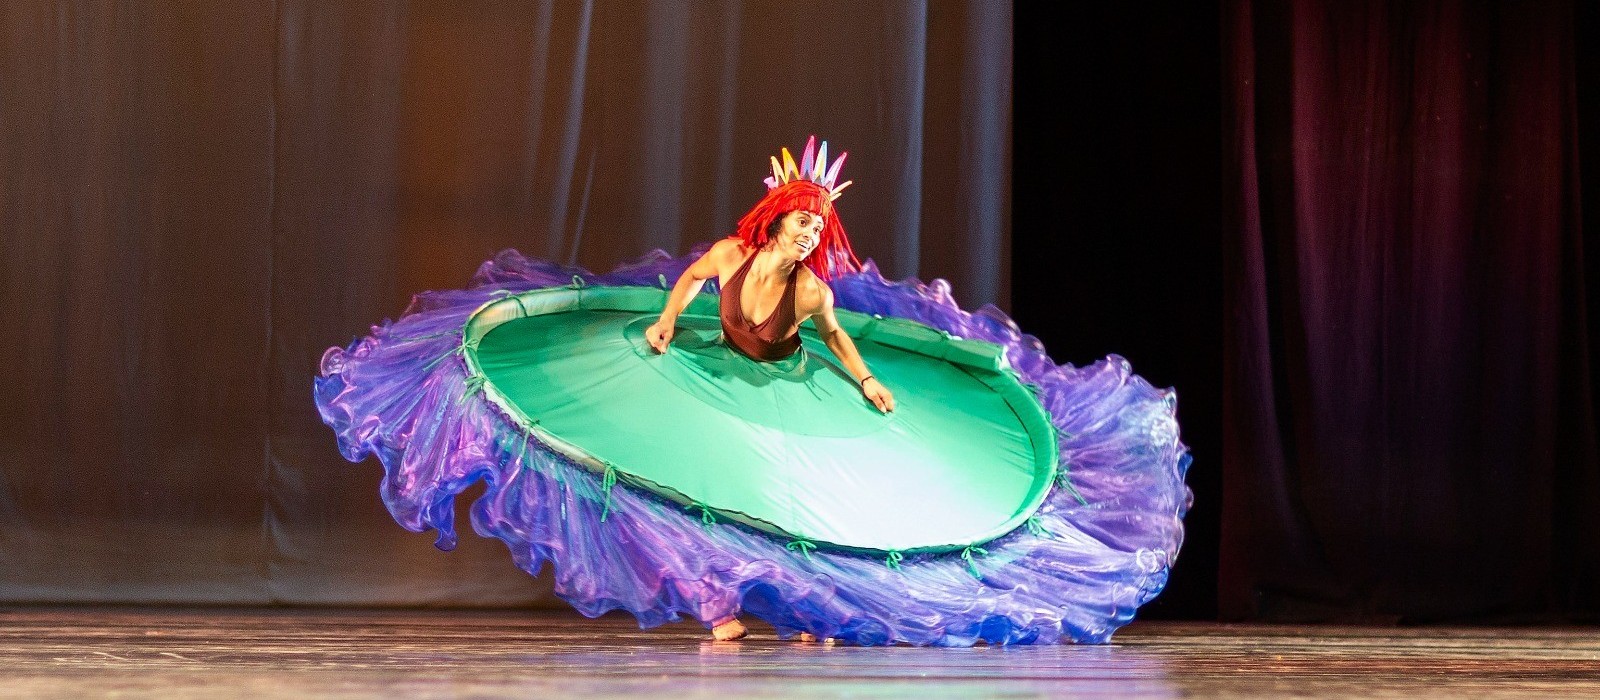 Balé Teatro Guaíra faz apresentações gratuitas do espetáculo “Lendas Brasileiras” em Cascavel